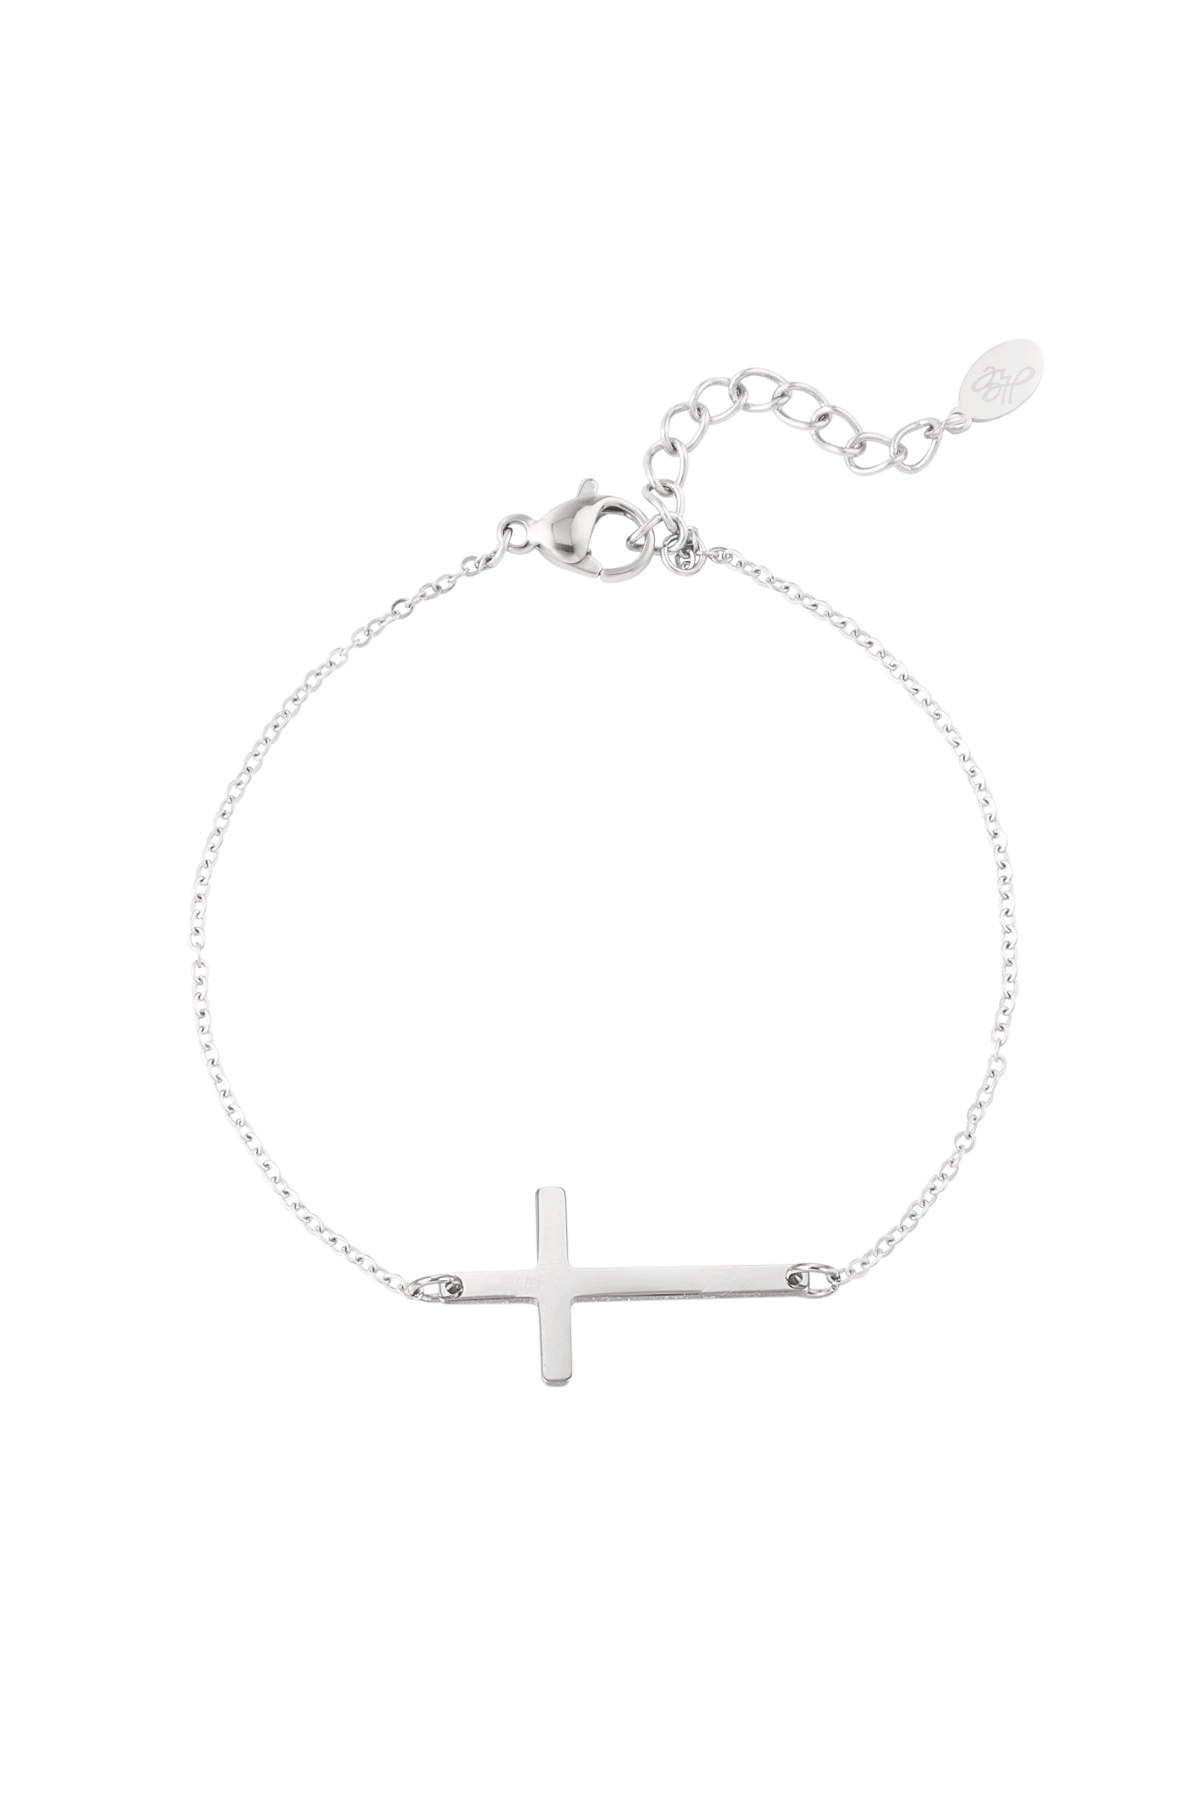 Bracelet cross - silver h5 